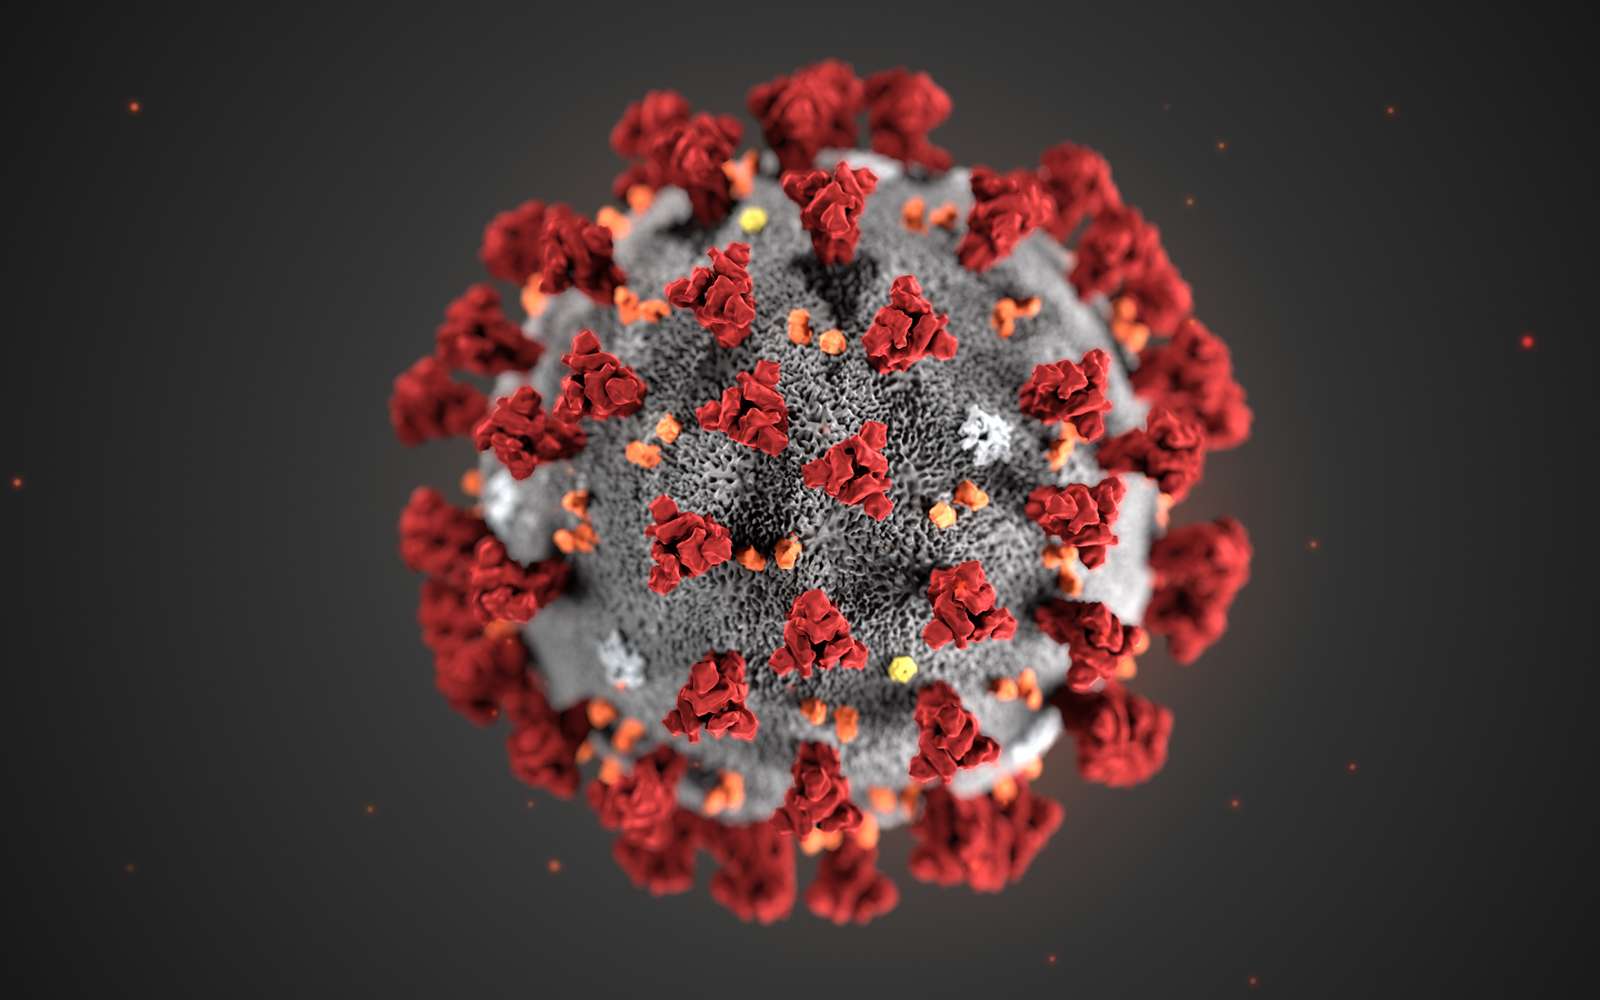 Cette illustration, créée aux Centers for Disease Control and Prevention (CDC), révèle la morphologie ultrastructurale des coronavirus. Notez les pointes, des protéines qui ornent la surface externe du virus donnant l'apparence d'une couronne entourant le virion, lorsqu'elles sont vues au microscope électronique. Un nouveau coronavirus, appelé syndrome respiratoire aigu sévère coronavirus 2 (SRAS-CoV-2), a été identifié comme la cause d'une épidémie de maladie respiratoire détectée pour la première fois à Wuhan, en Chine en 2019. La maladie causée par ce virus a été appelée maladie de coronavirus 2019 (Covid-19). © DP, Alissa Eckert, MS ; Dan Higgins, MAMS